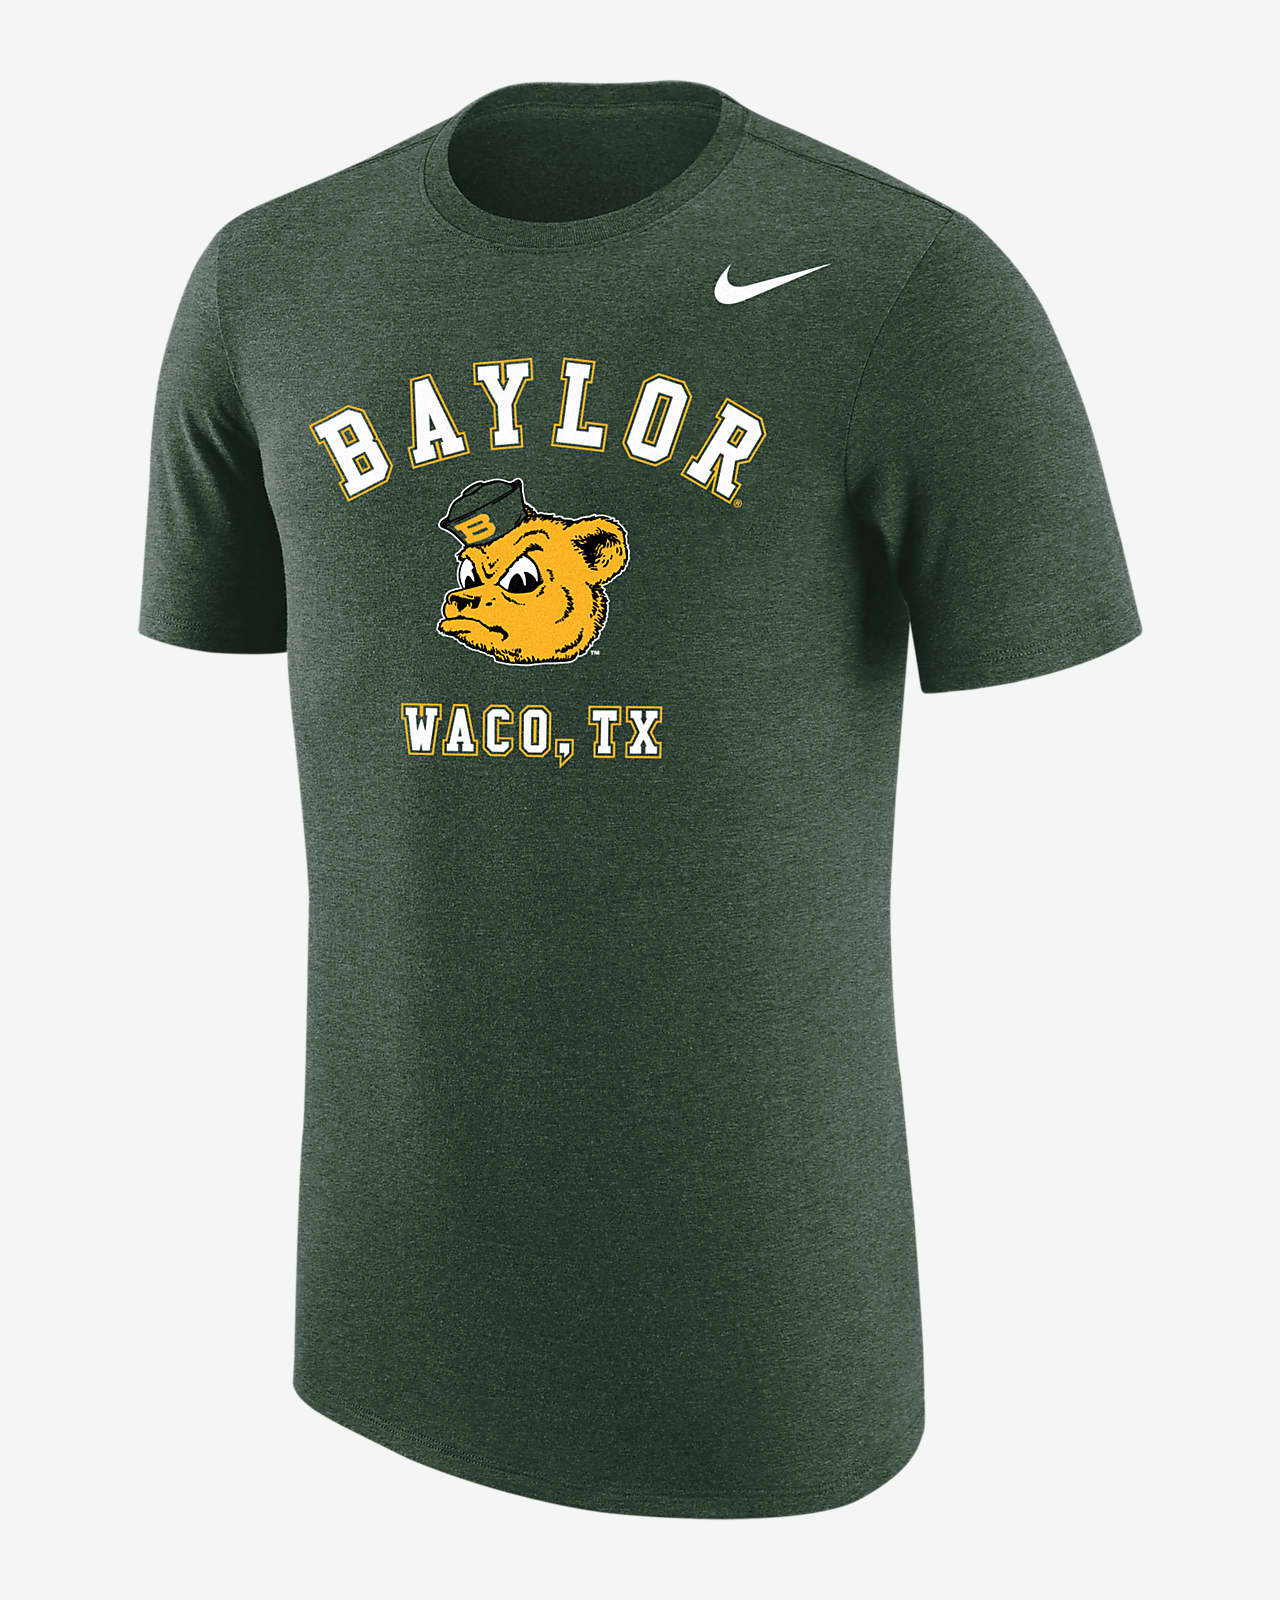 Baylor Men's Nike College T-Shirt